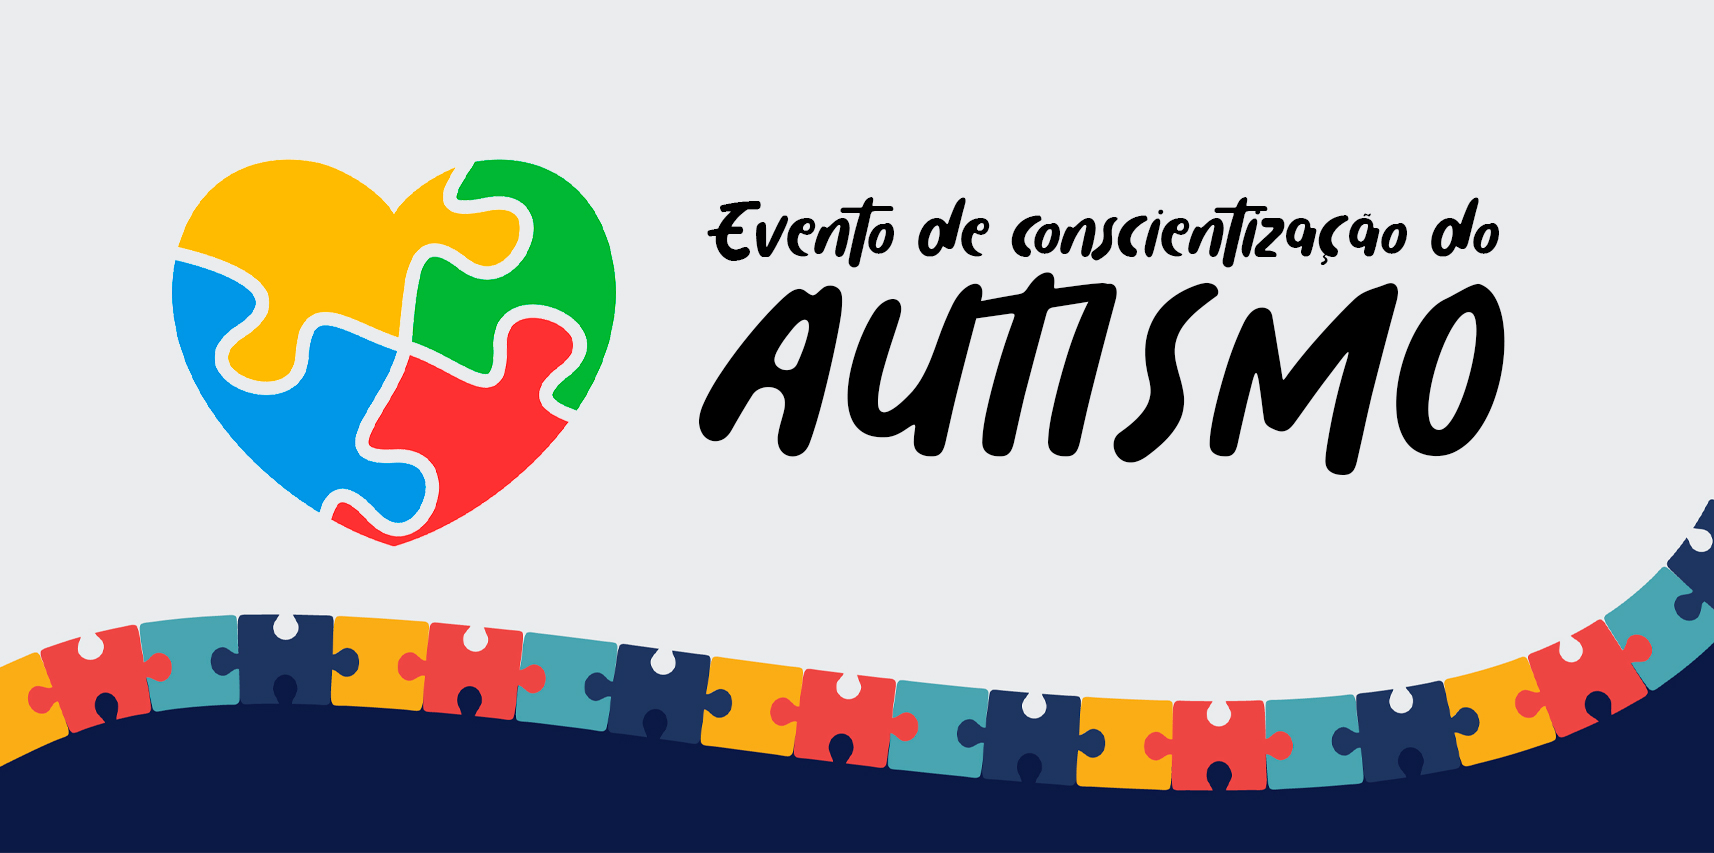 Secretaria Municipal de Educação de Vargem Alta realiza evento de conscientização sobre o Autismo